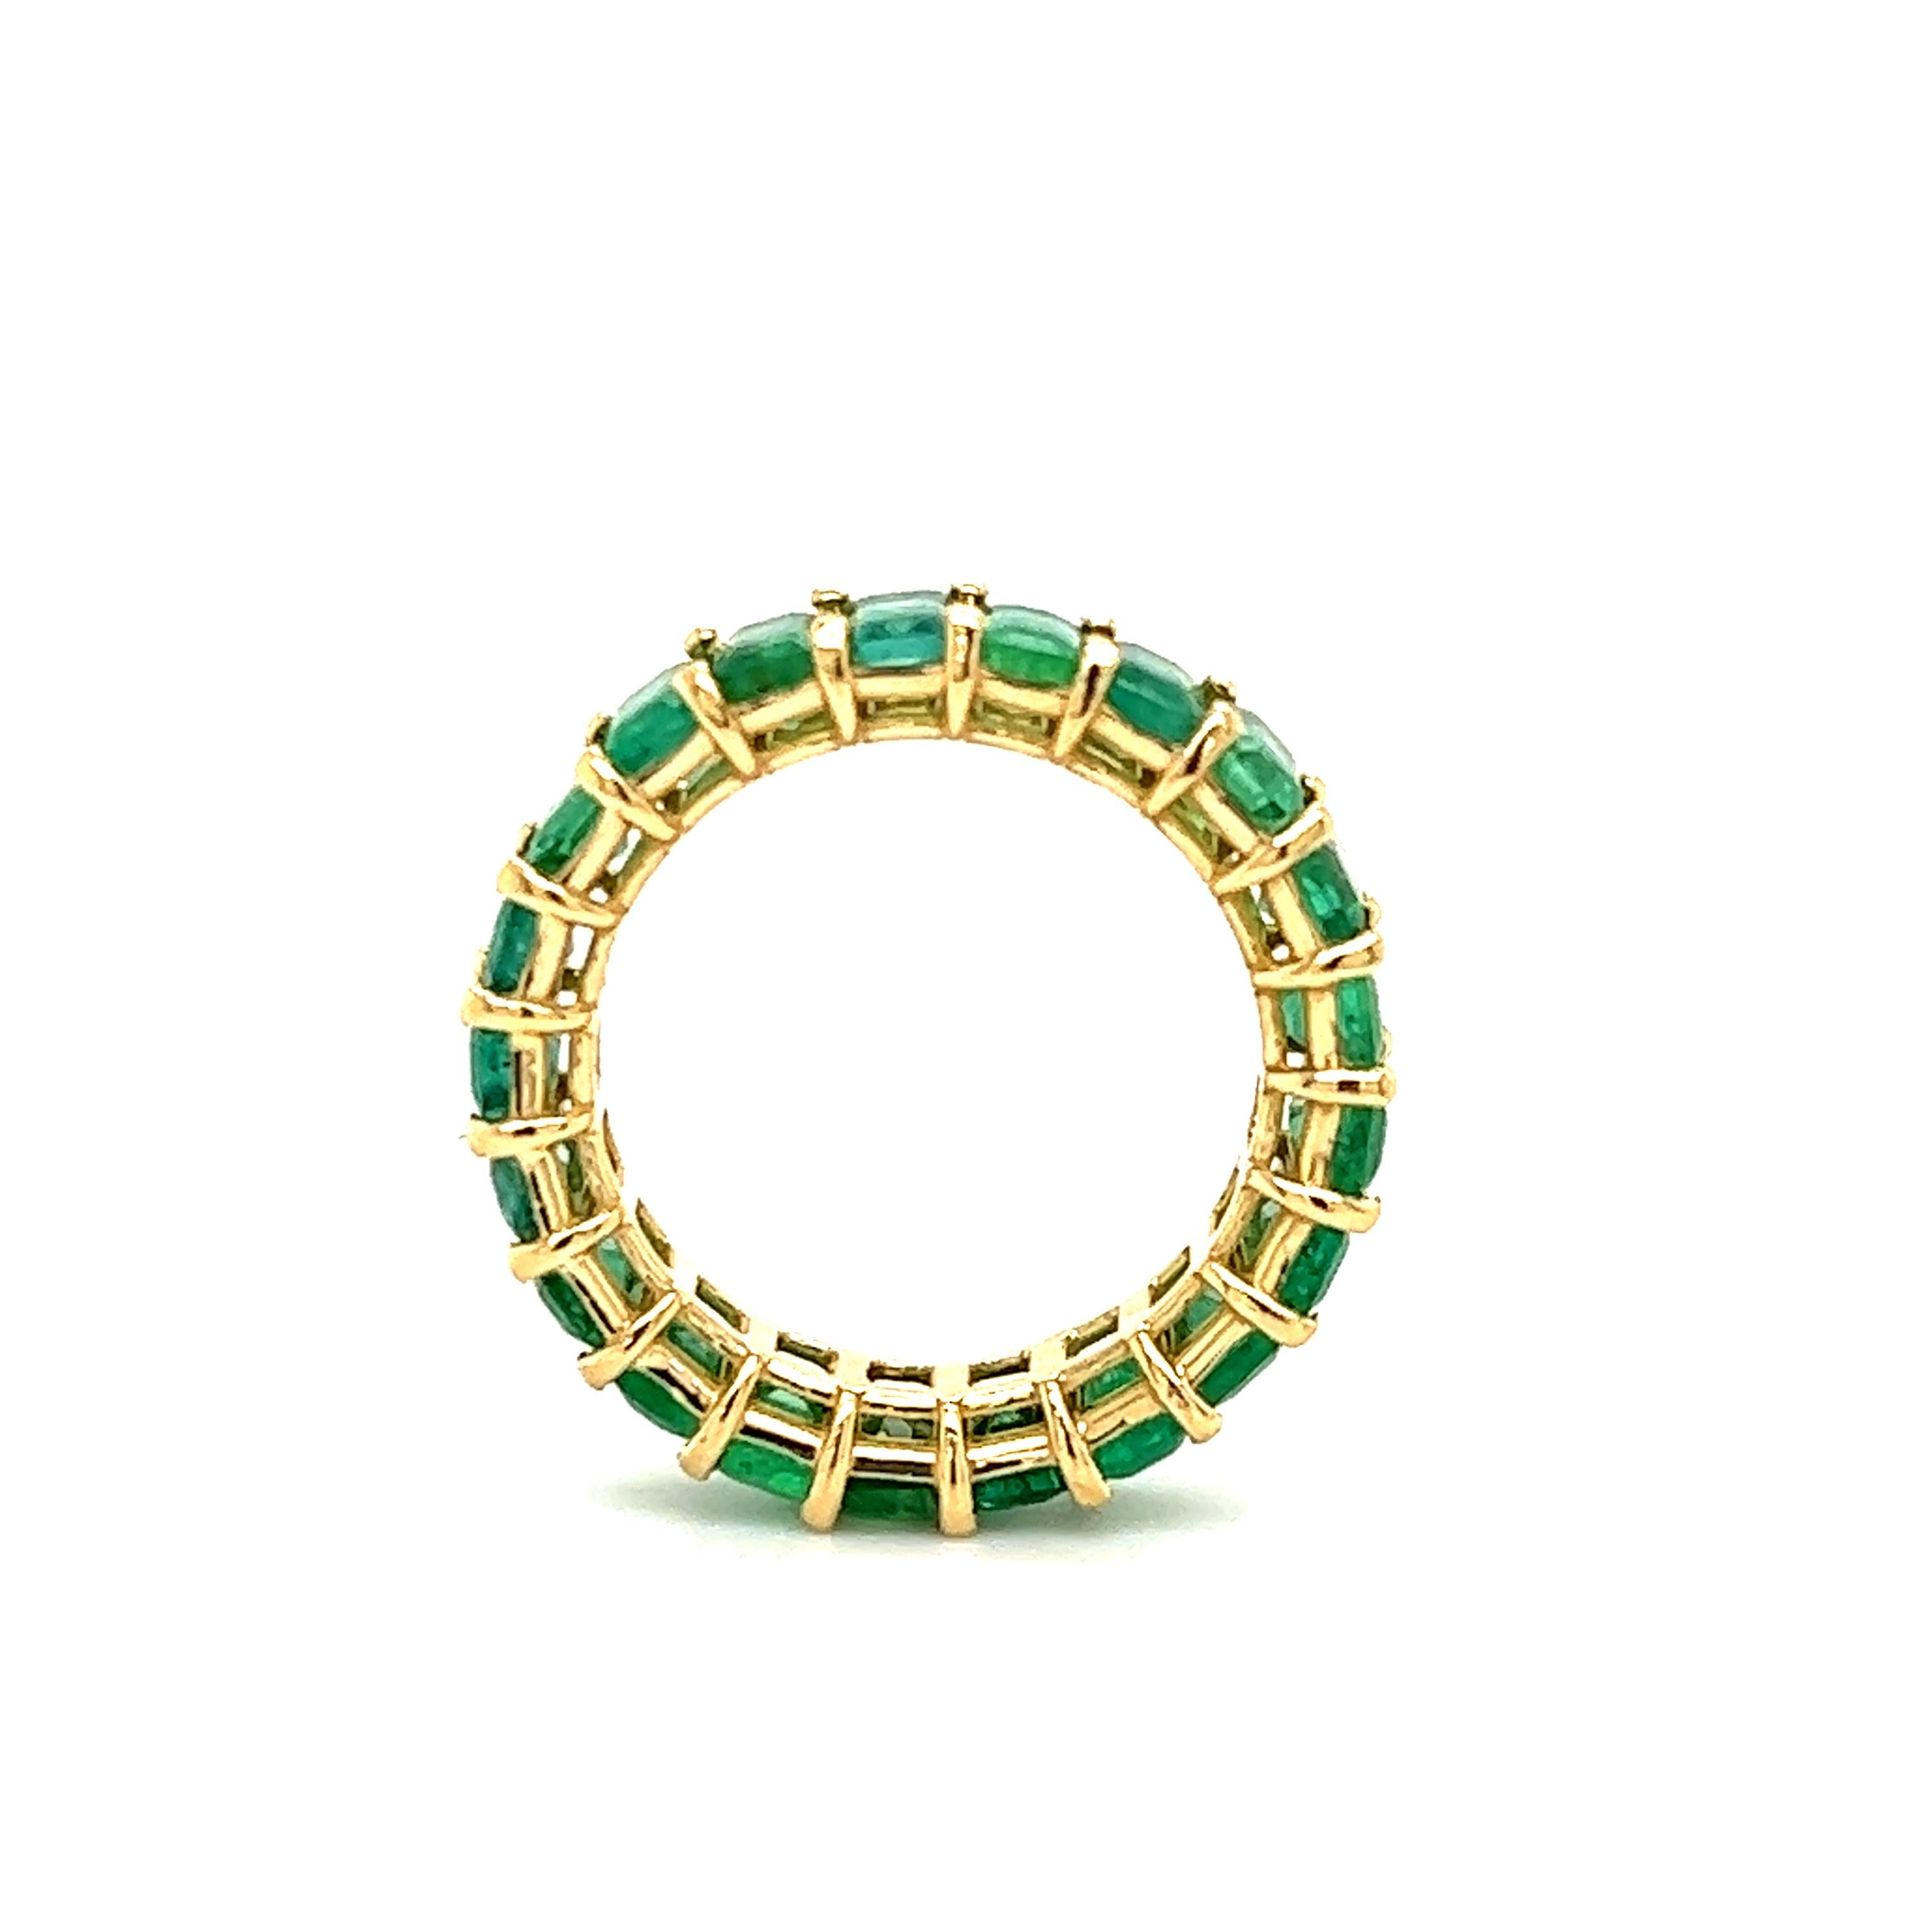 Erstaunlich handgefertigt 18k Gelbgold kolumbianischen Smaragd Ewigkeit Band. Dieser Ring ist wirklich atemberaubend. Jeder Stein wurde perfekt aufeinander abgestimmt, um diesen einmaligen Ring zu schaffen. Einundzwanzig Smaragde sind in dieses Band